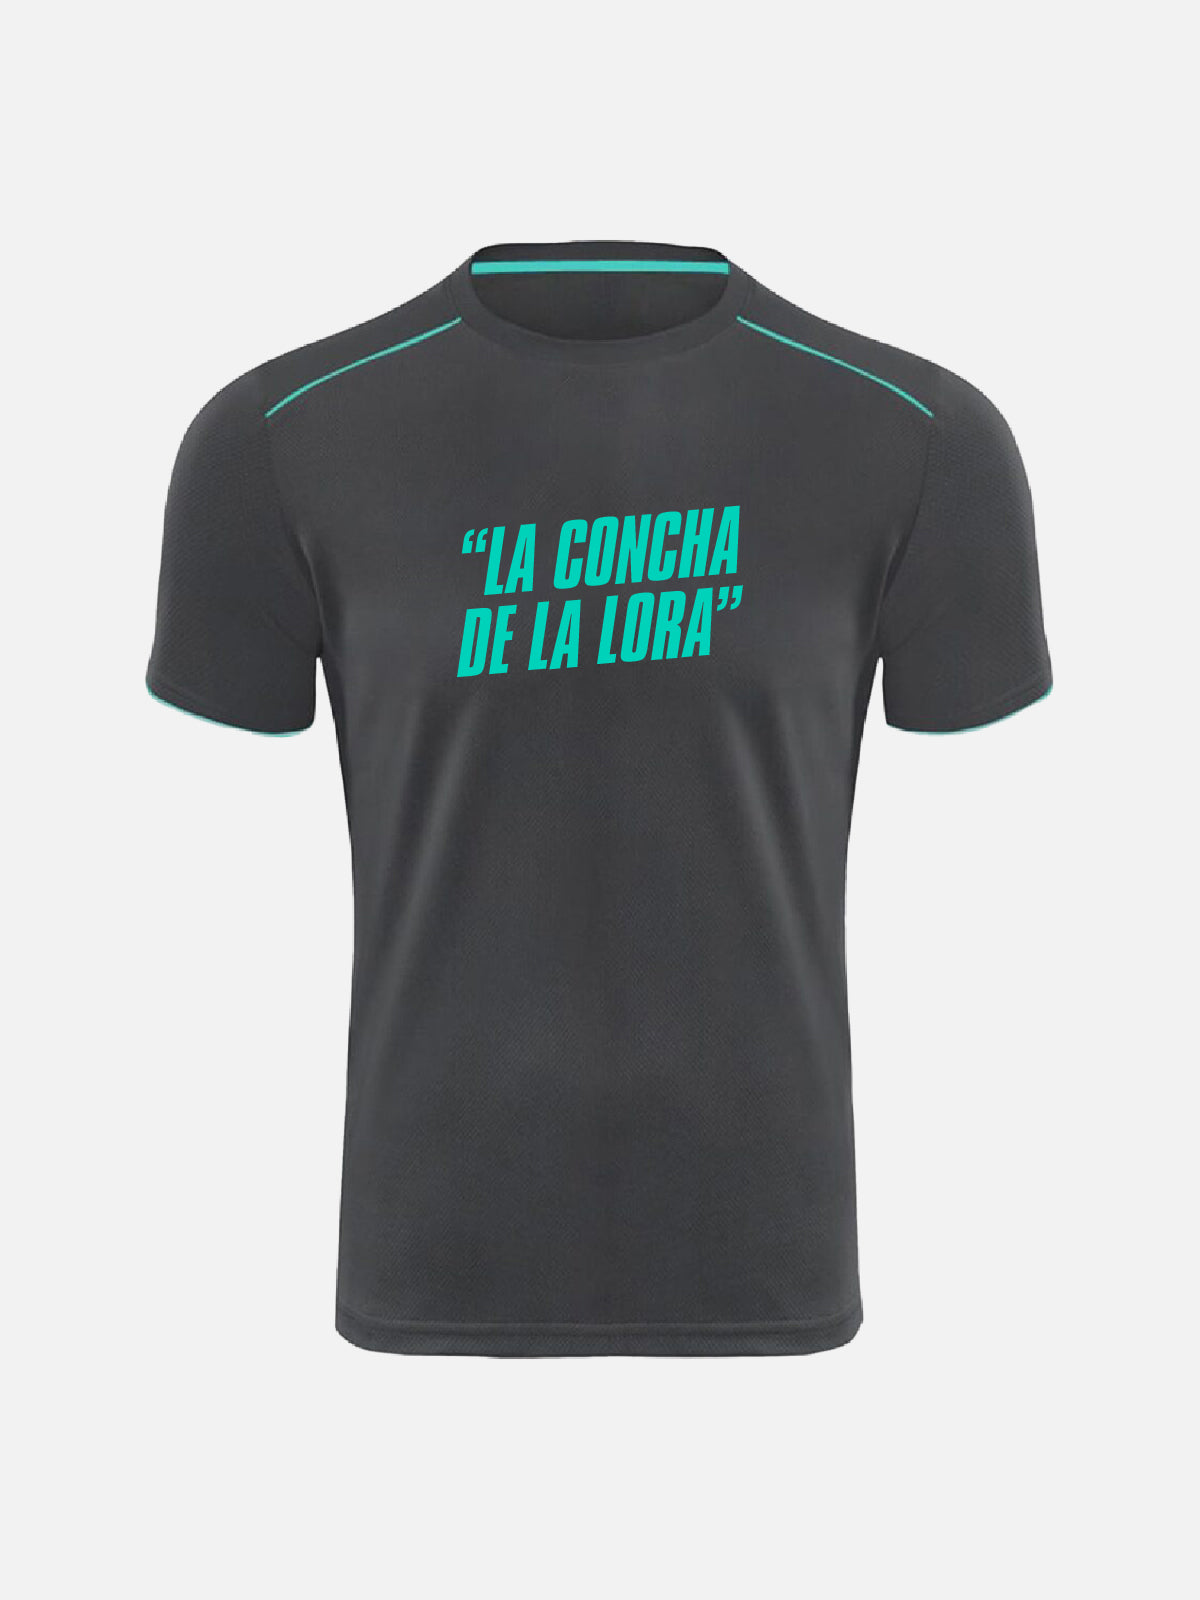 T-shirt - “La Concha De La Lora”